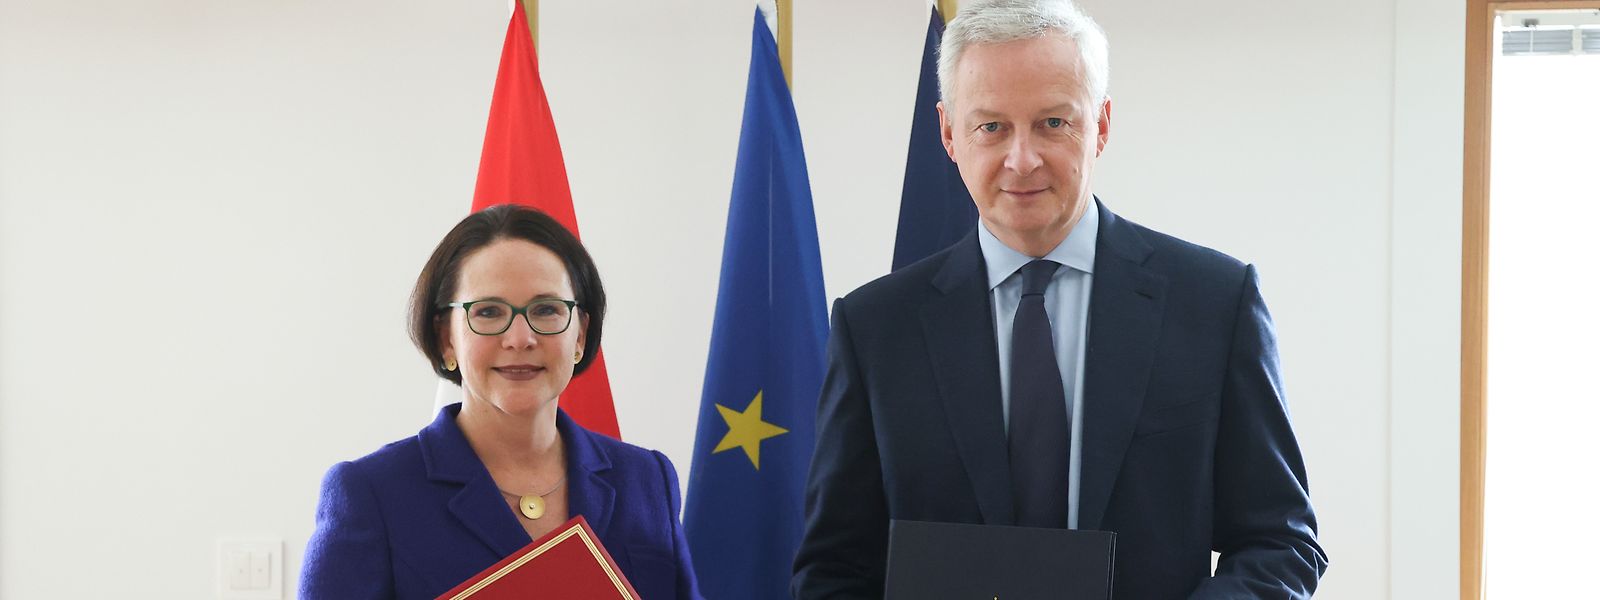 Finanzministerin Yuriko Backes (DP) und ihr französischer Amtskollege Bruno Le Maire haben eine Ergänzung zum bilateralen Steuerabkommen unterschrieben.